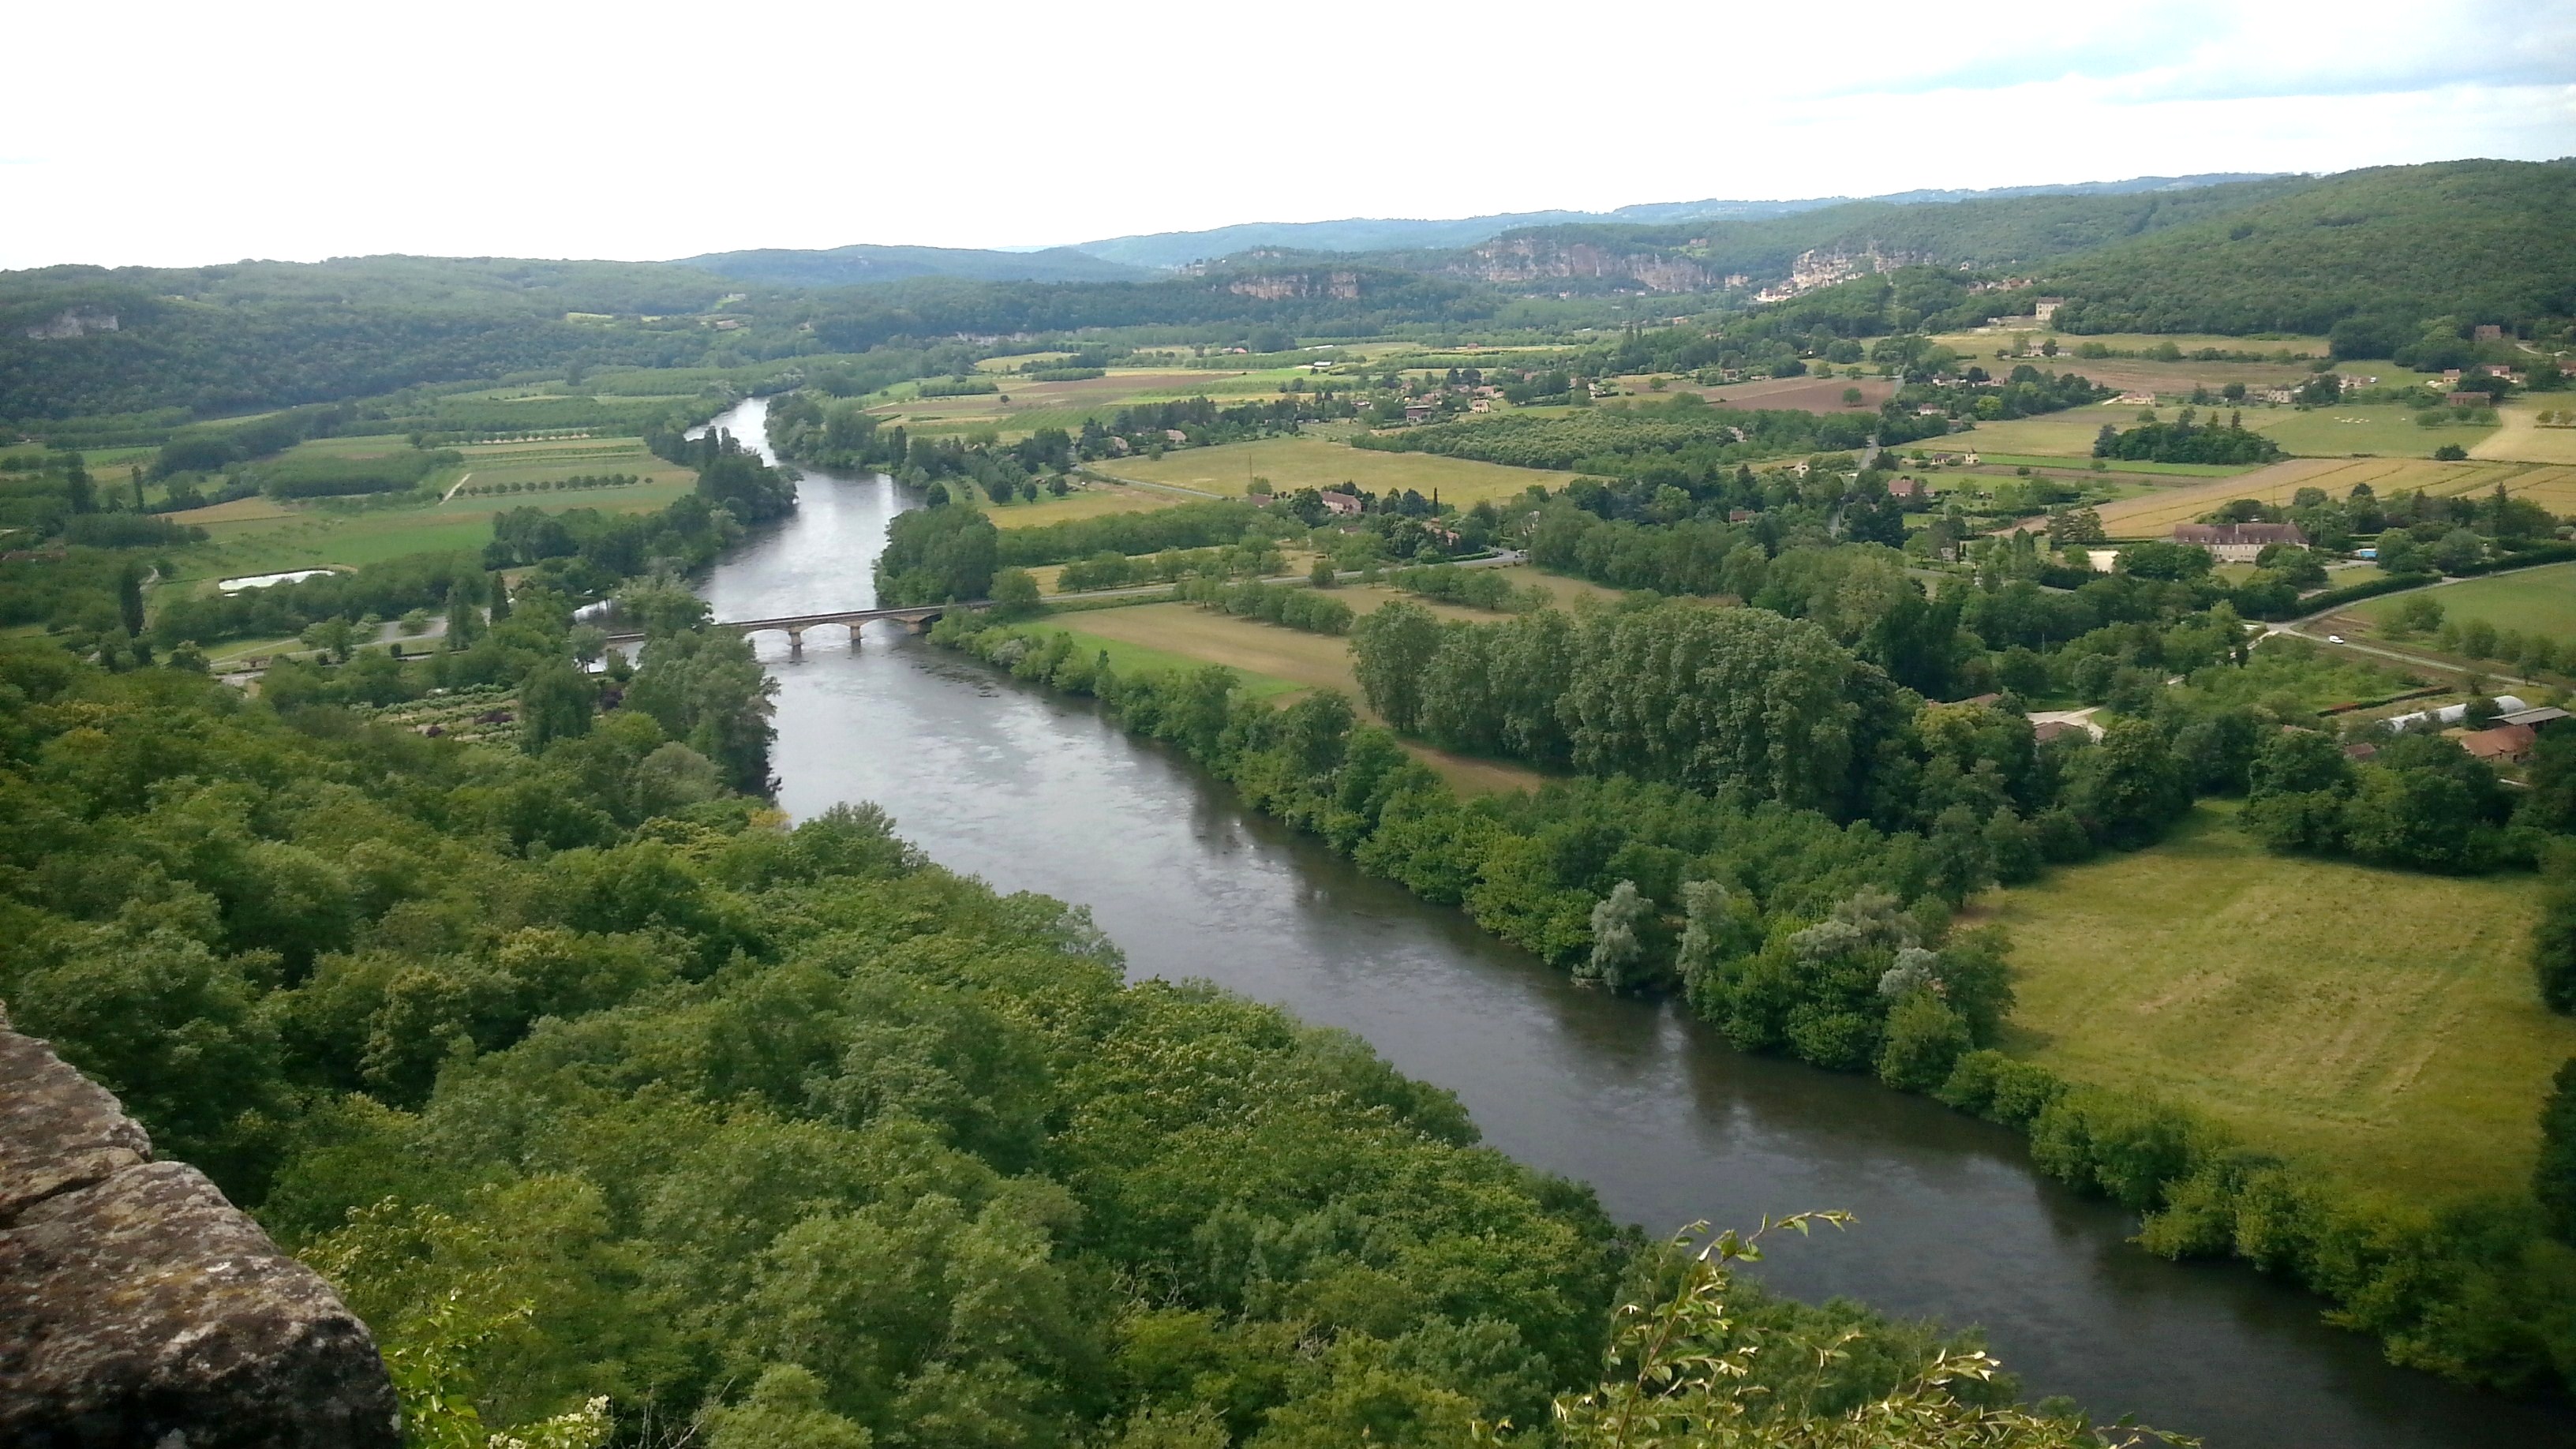 Visite touristique en Dordogne